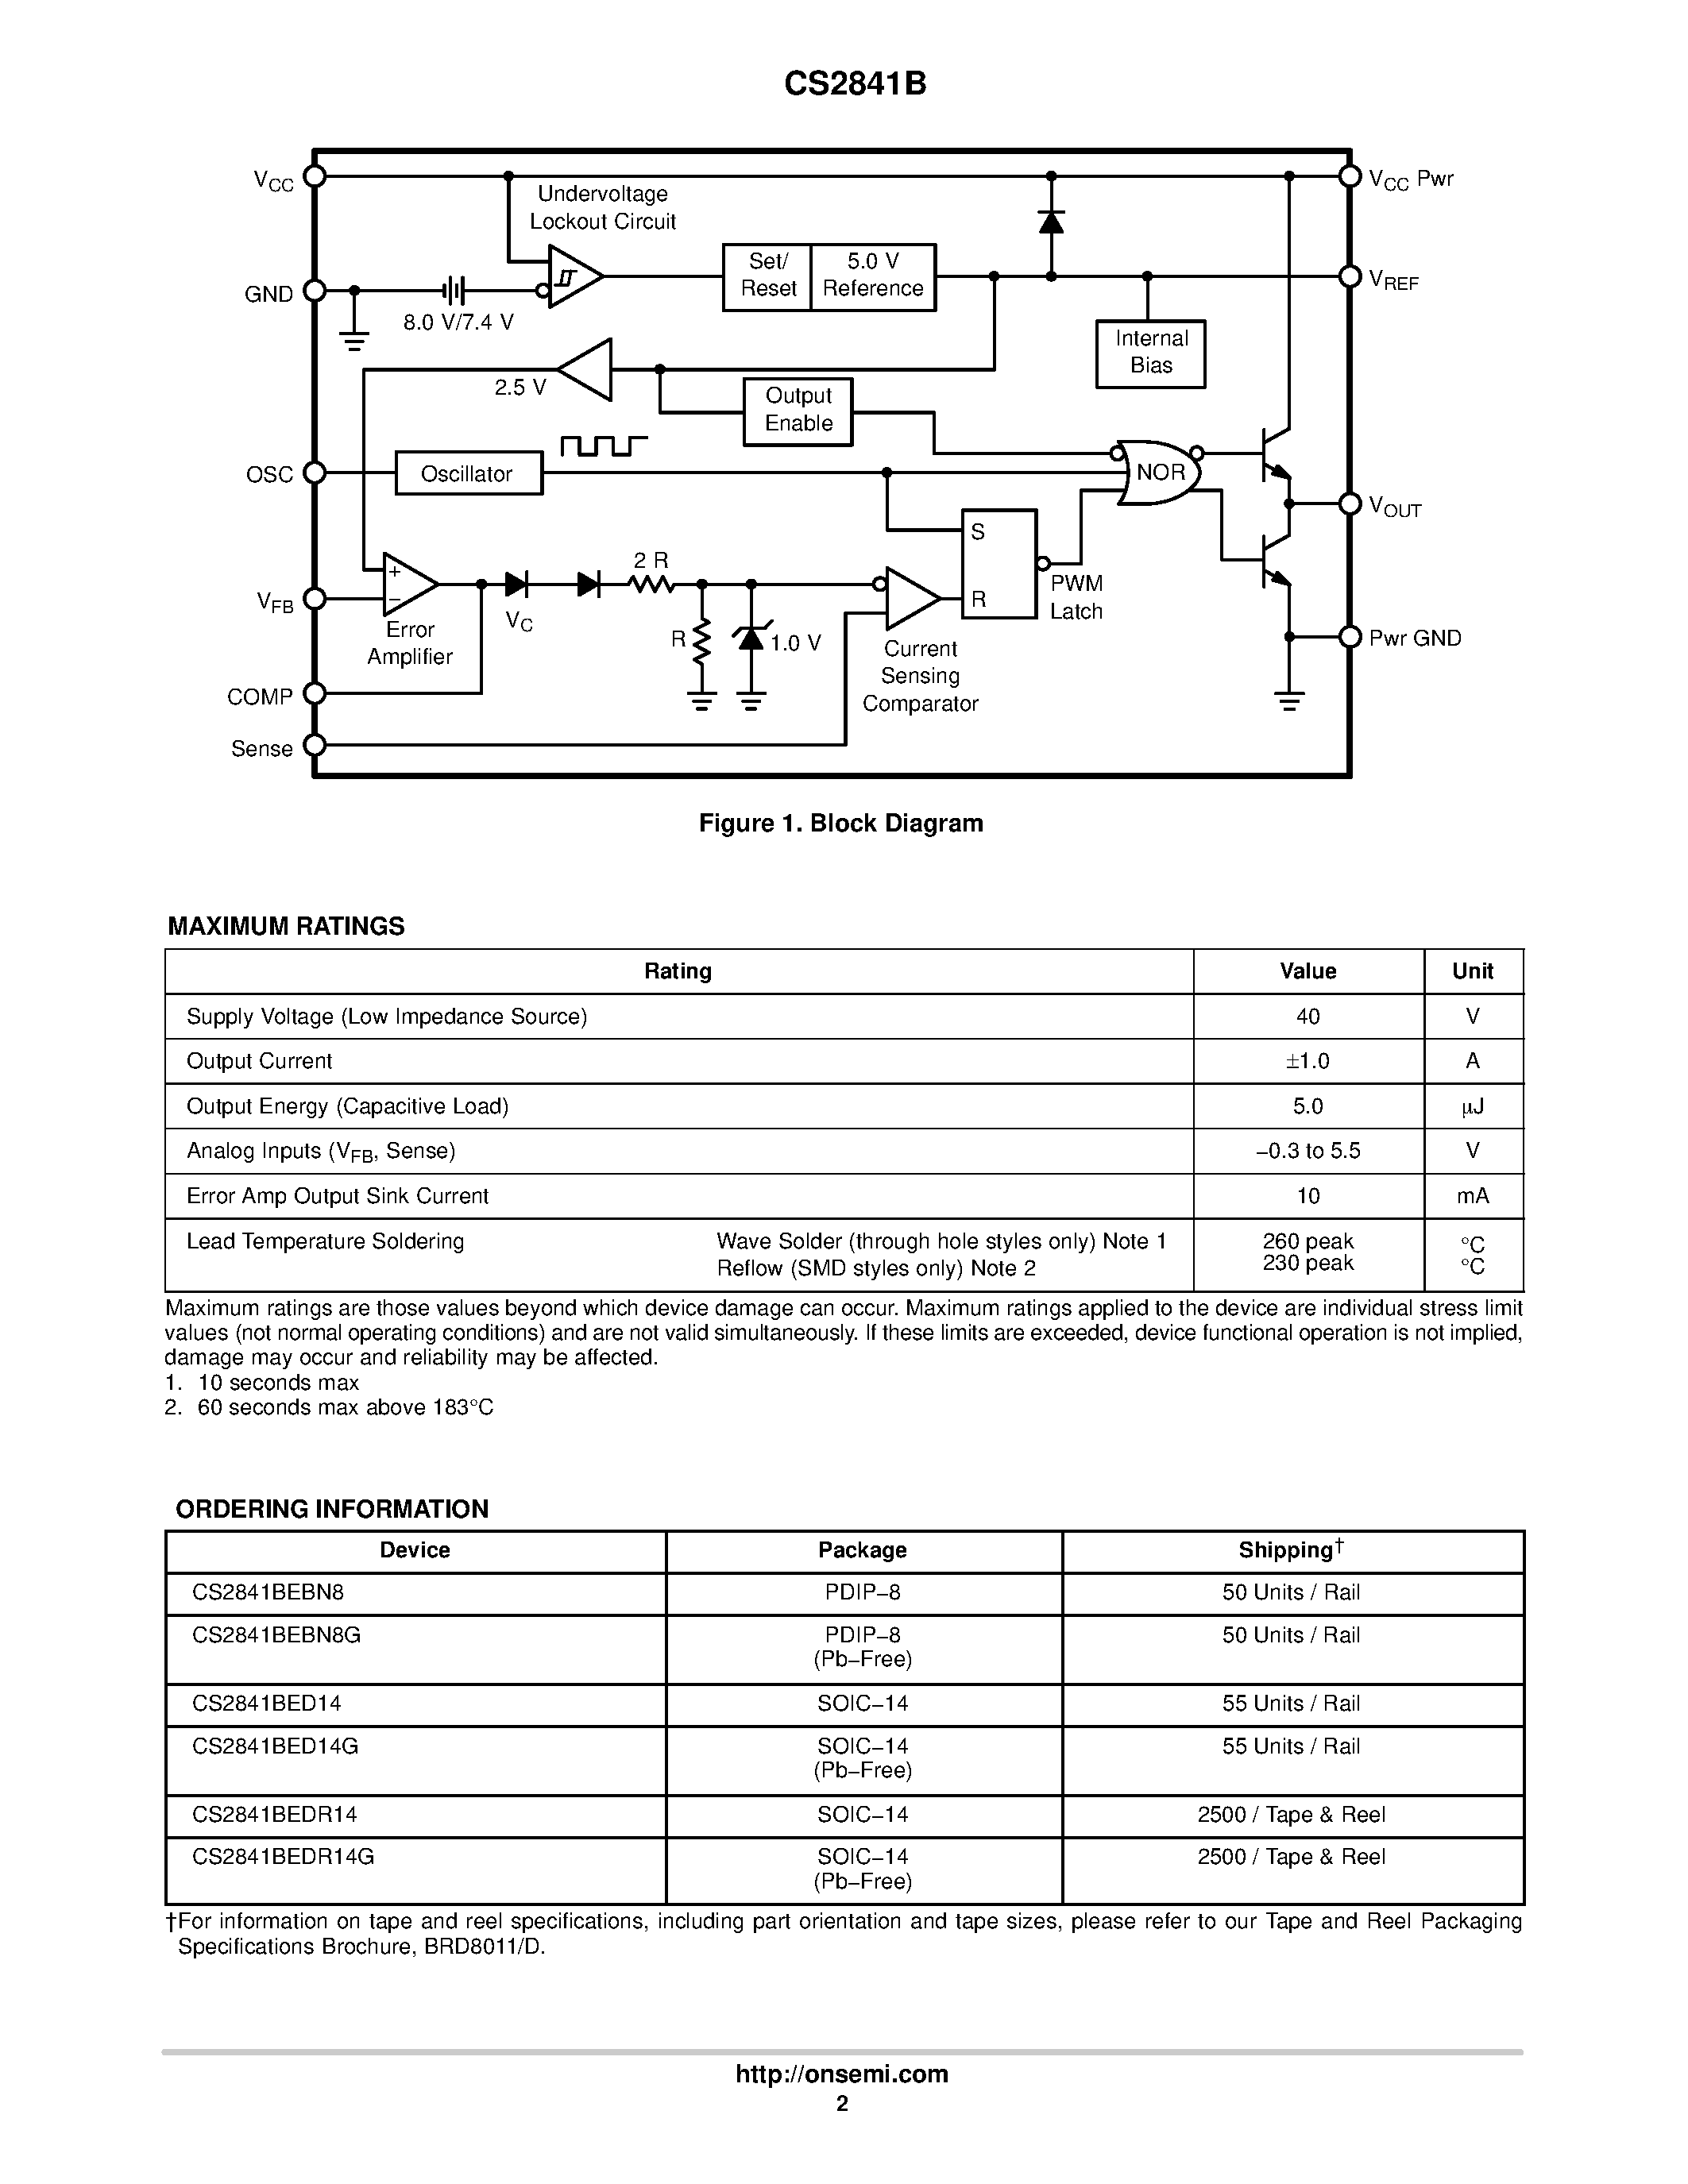 Даташит CS2841B - Automotive Current Mode PWM Control Circuit страница 2